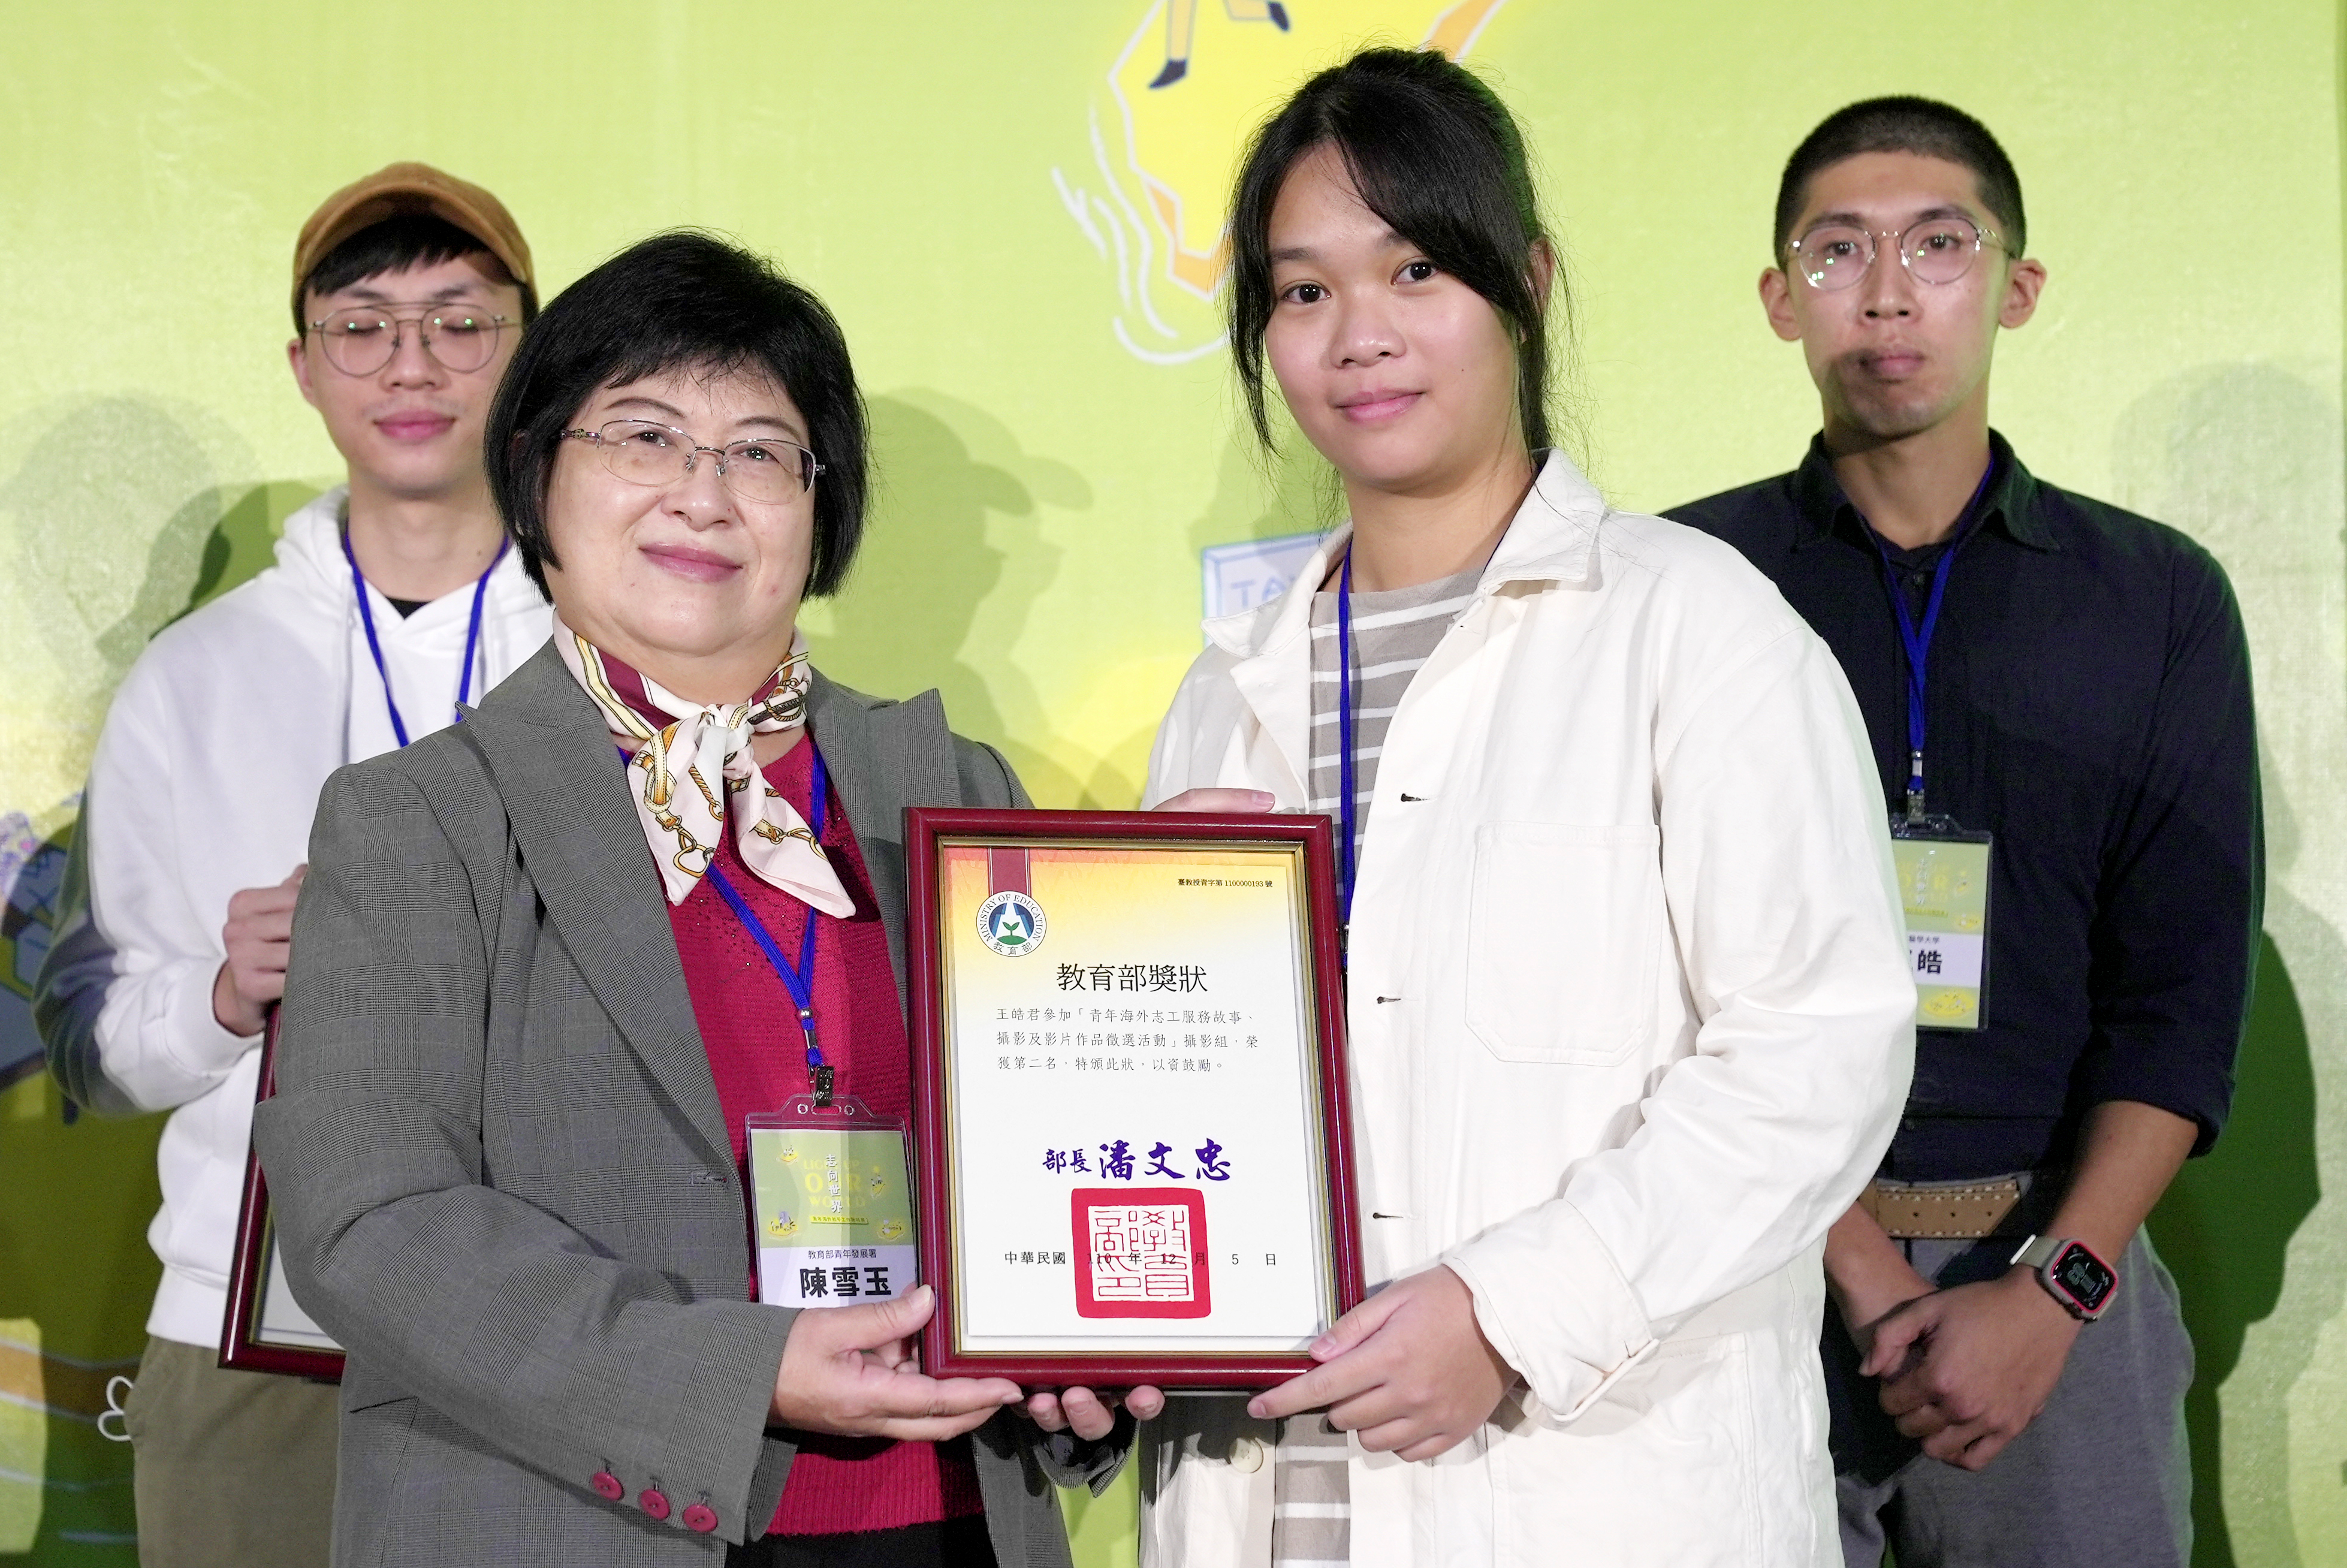 陳署長頒獎予國立清華大學邱于宸，她以《追夢的我們》獲影片作品第1名。